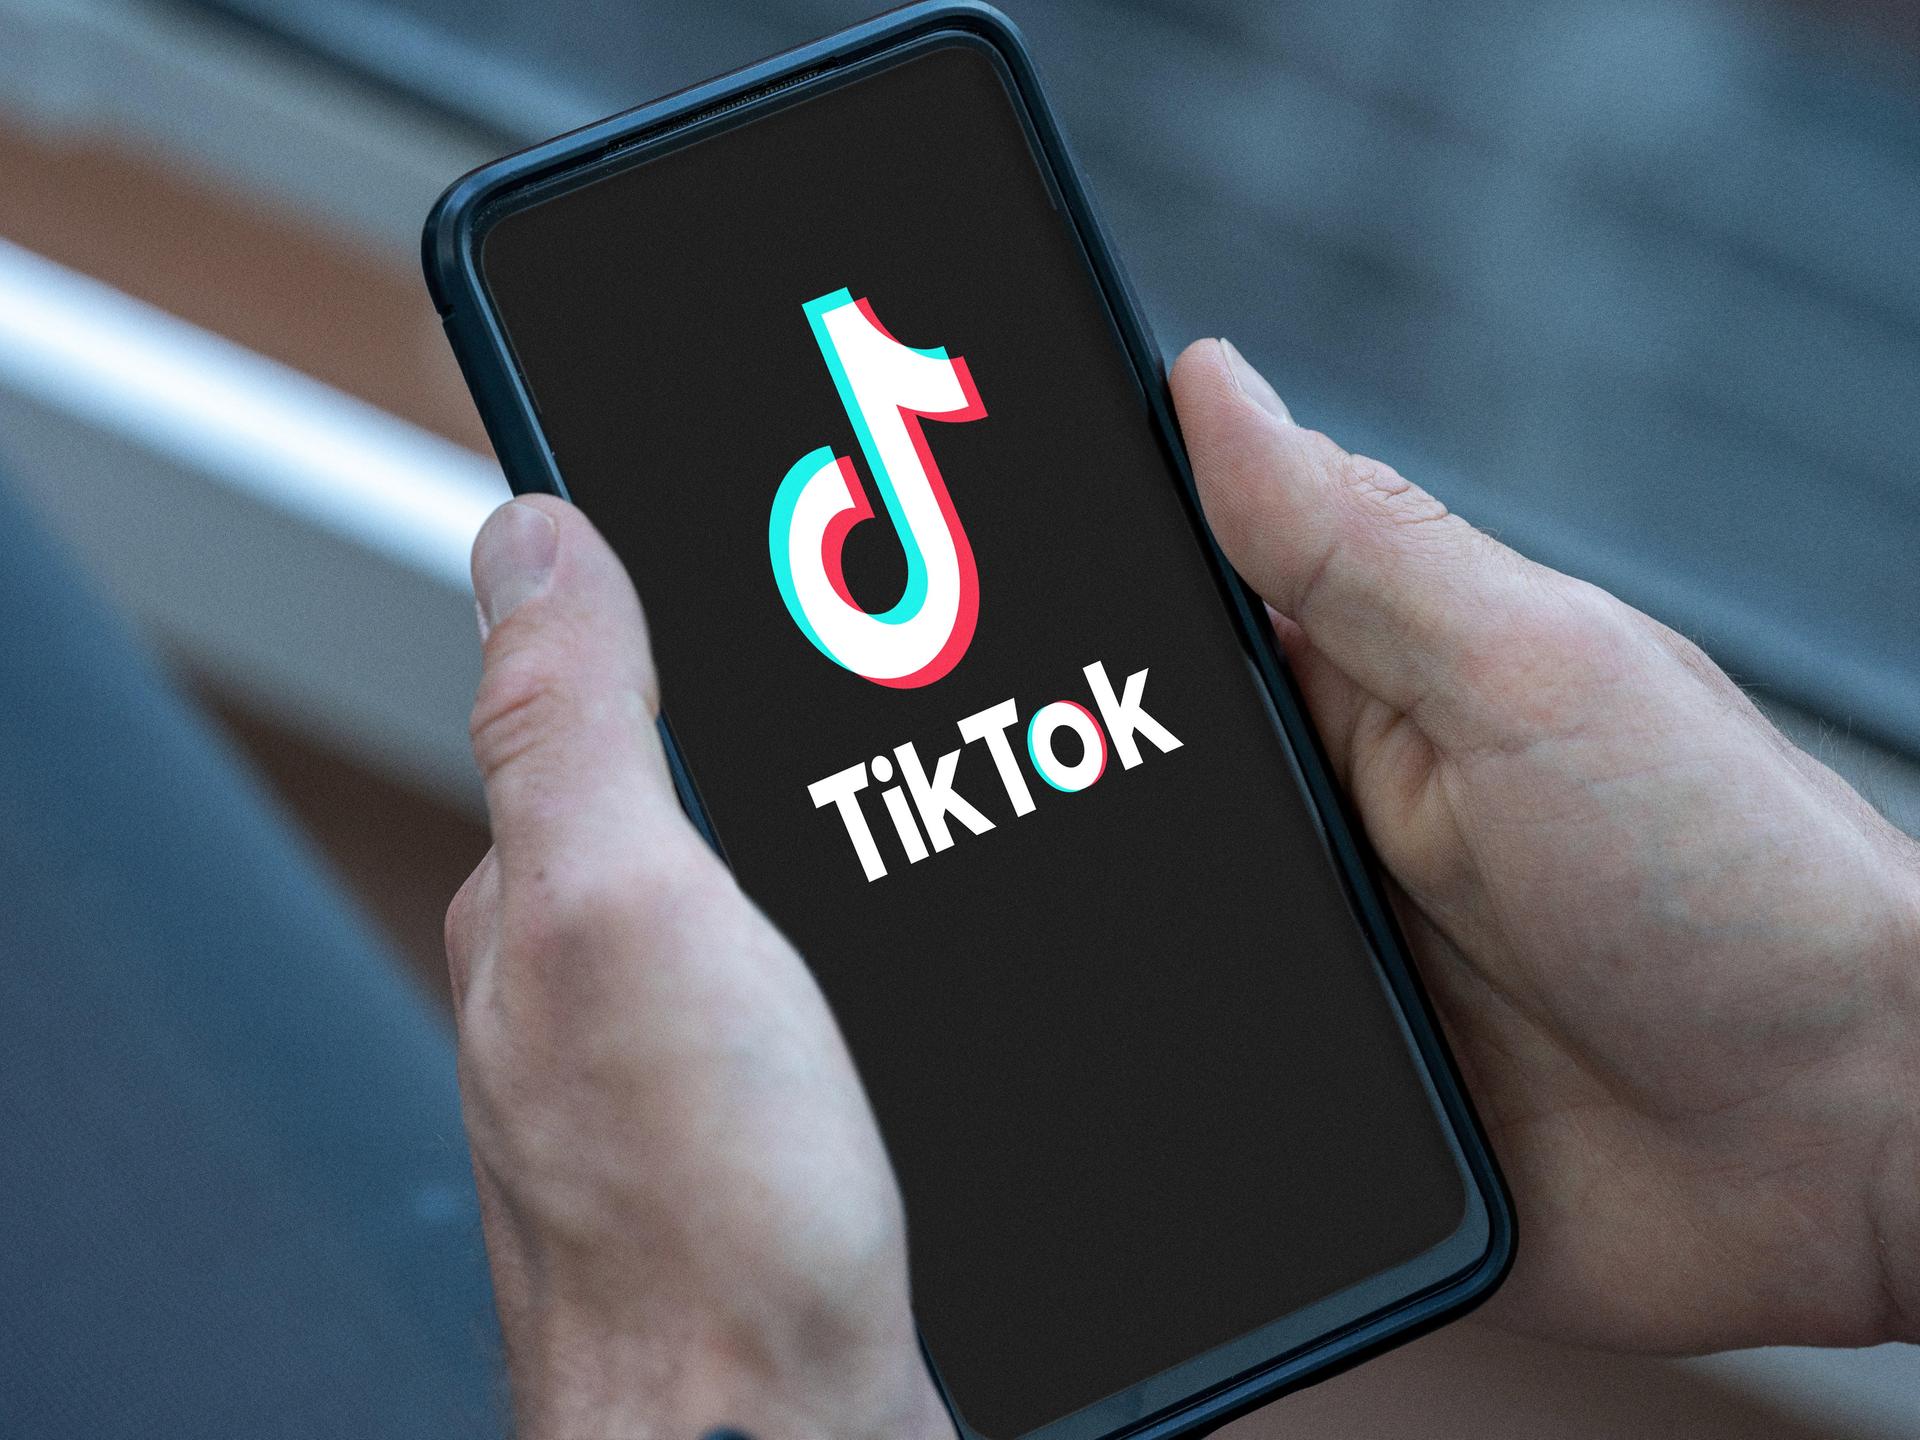 Mann hält Smartphone in der Hand mit dem TikTok Logo auf dem Bildschirm.  